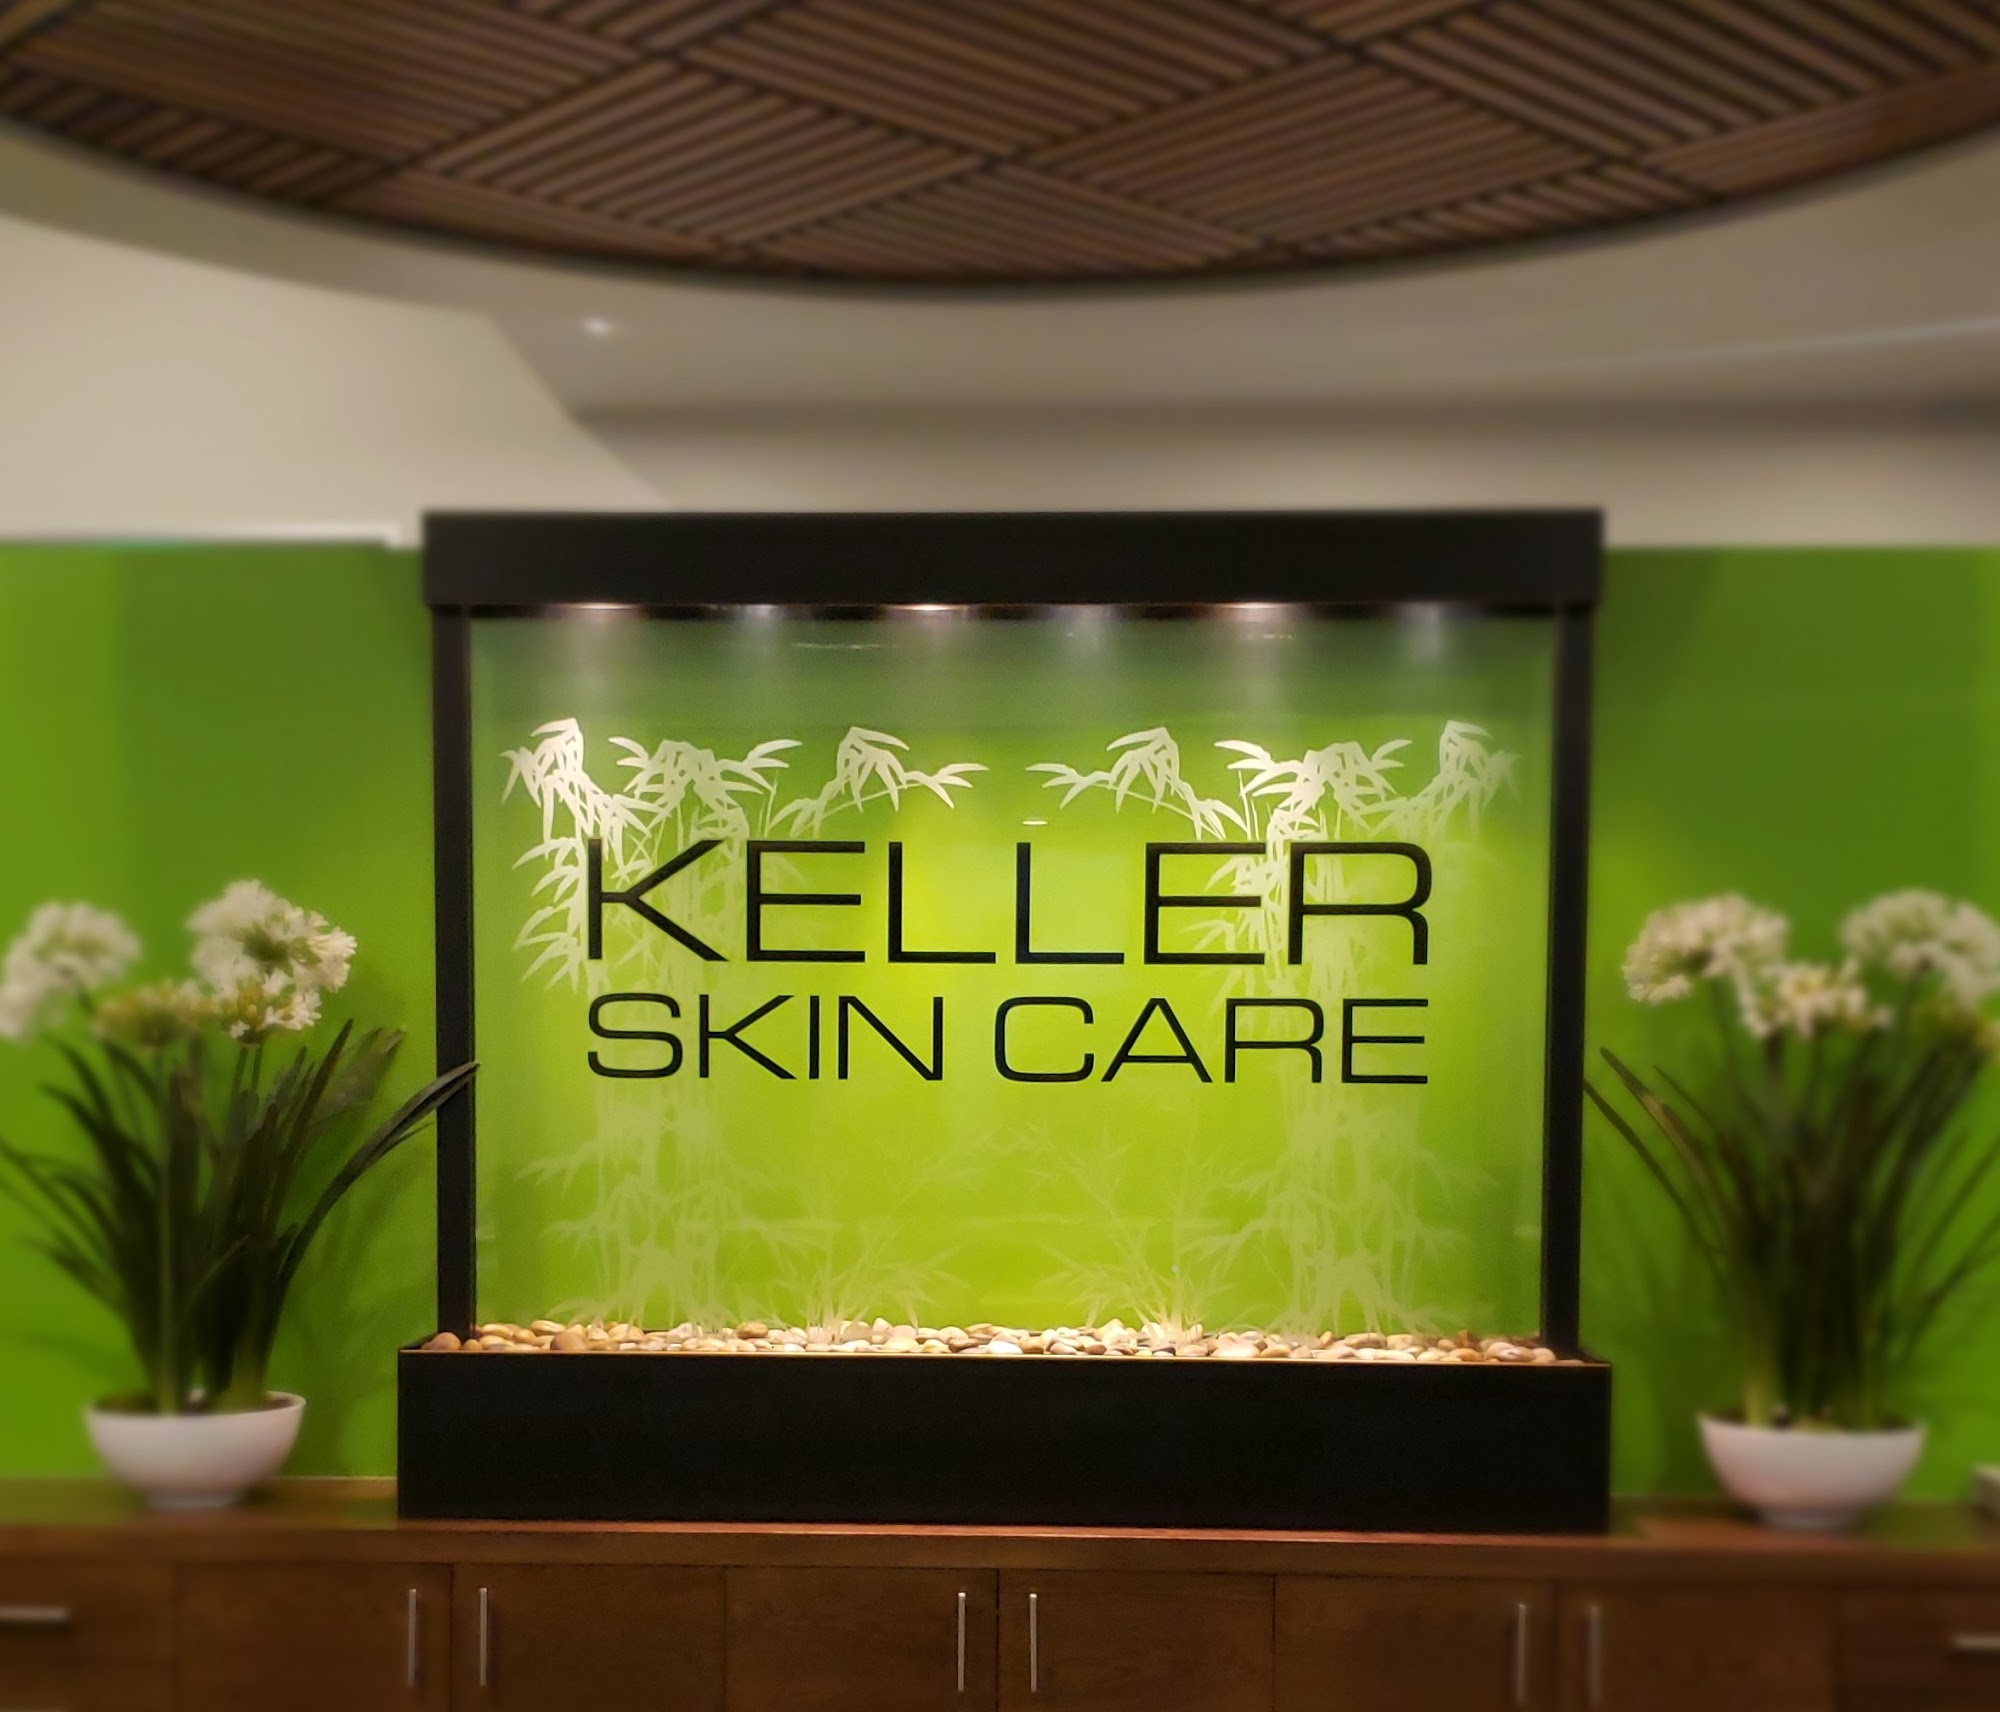 Keller Skin Care